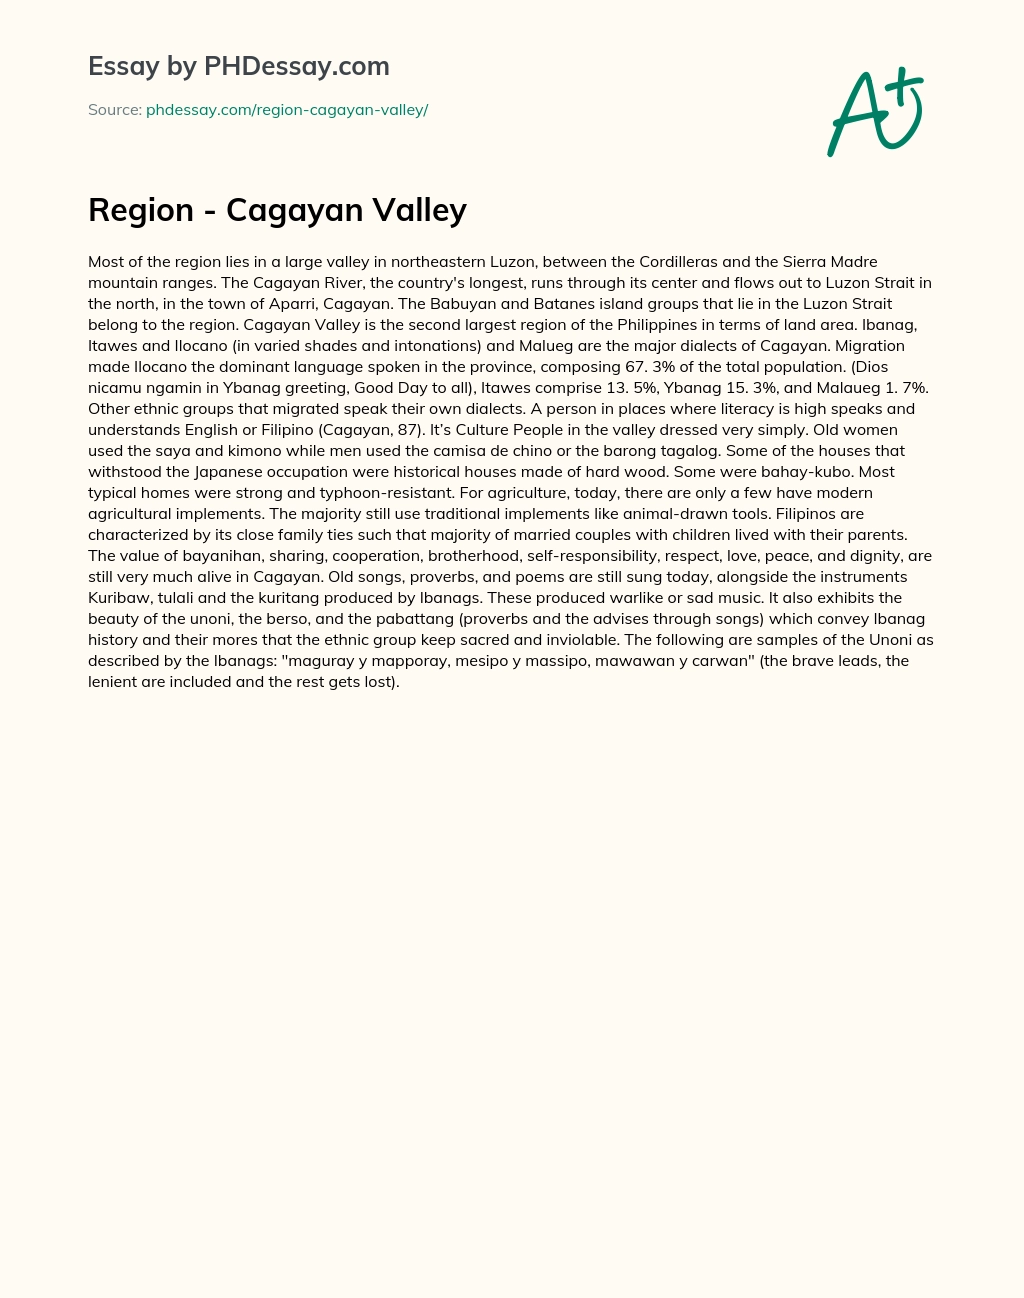 Region – Cagayan Valley essay